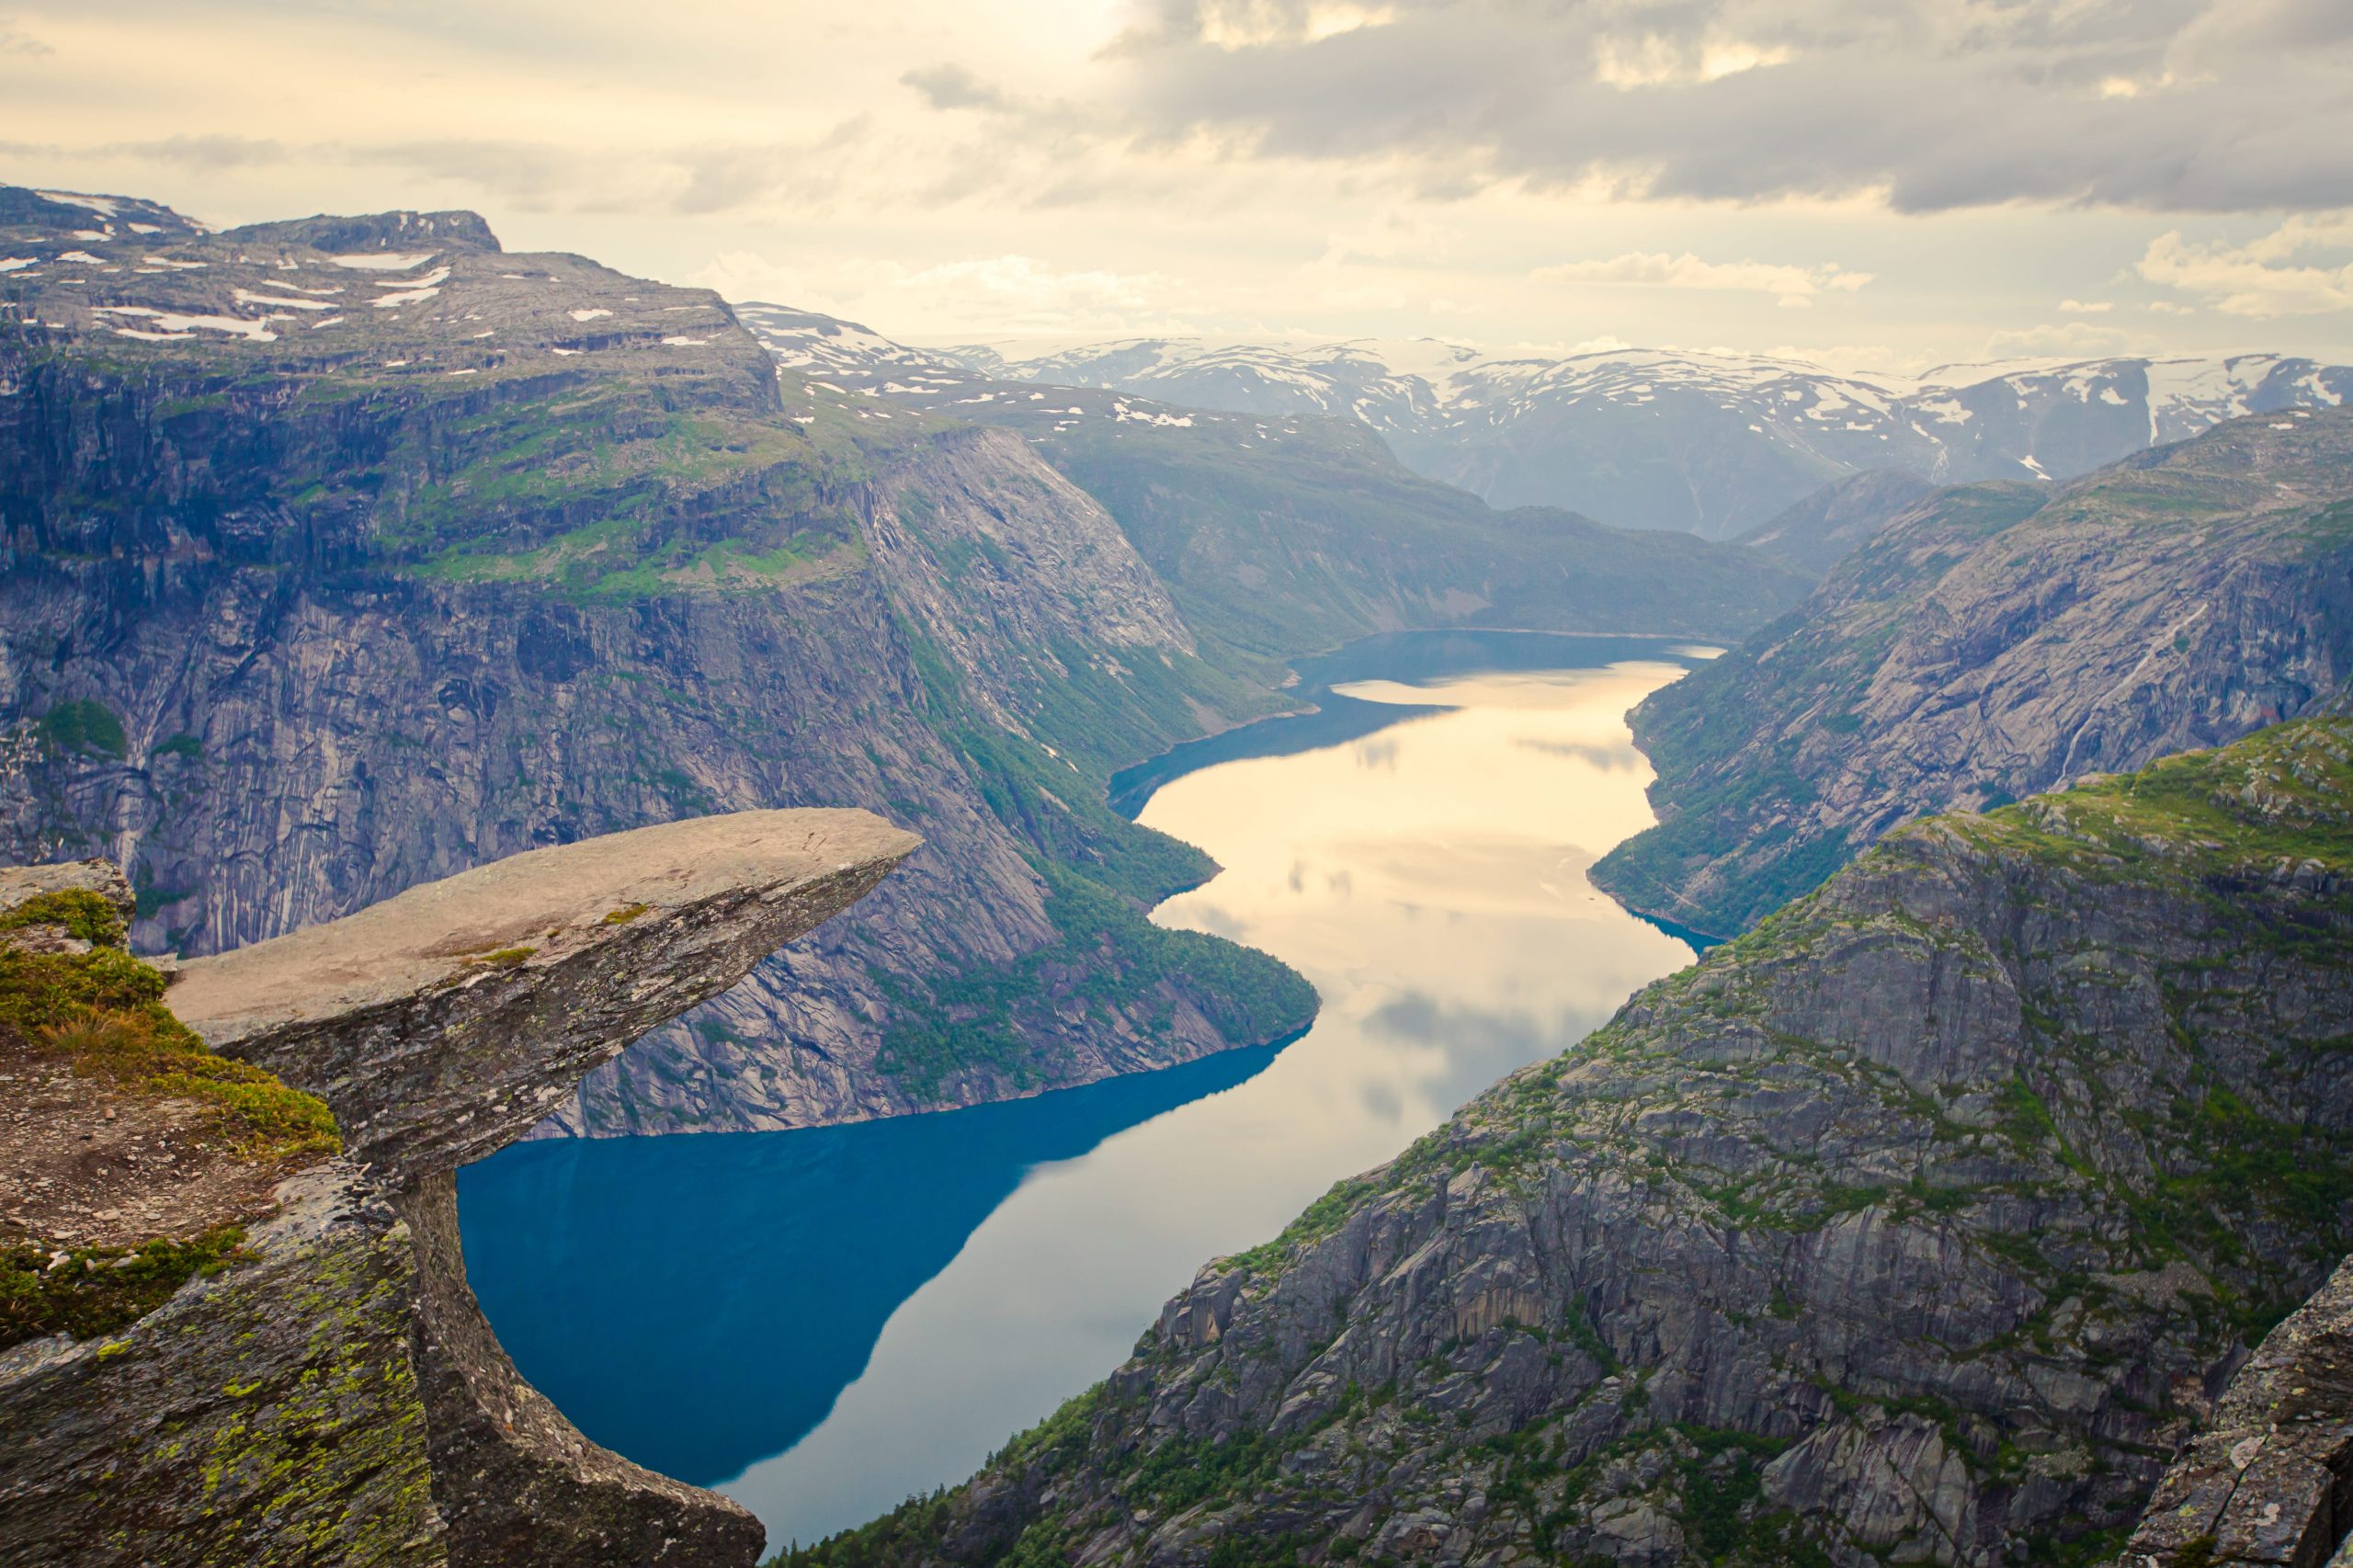 Guia da Escandinávia: O essencial que você precisa saber antes de